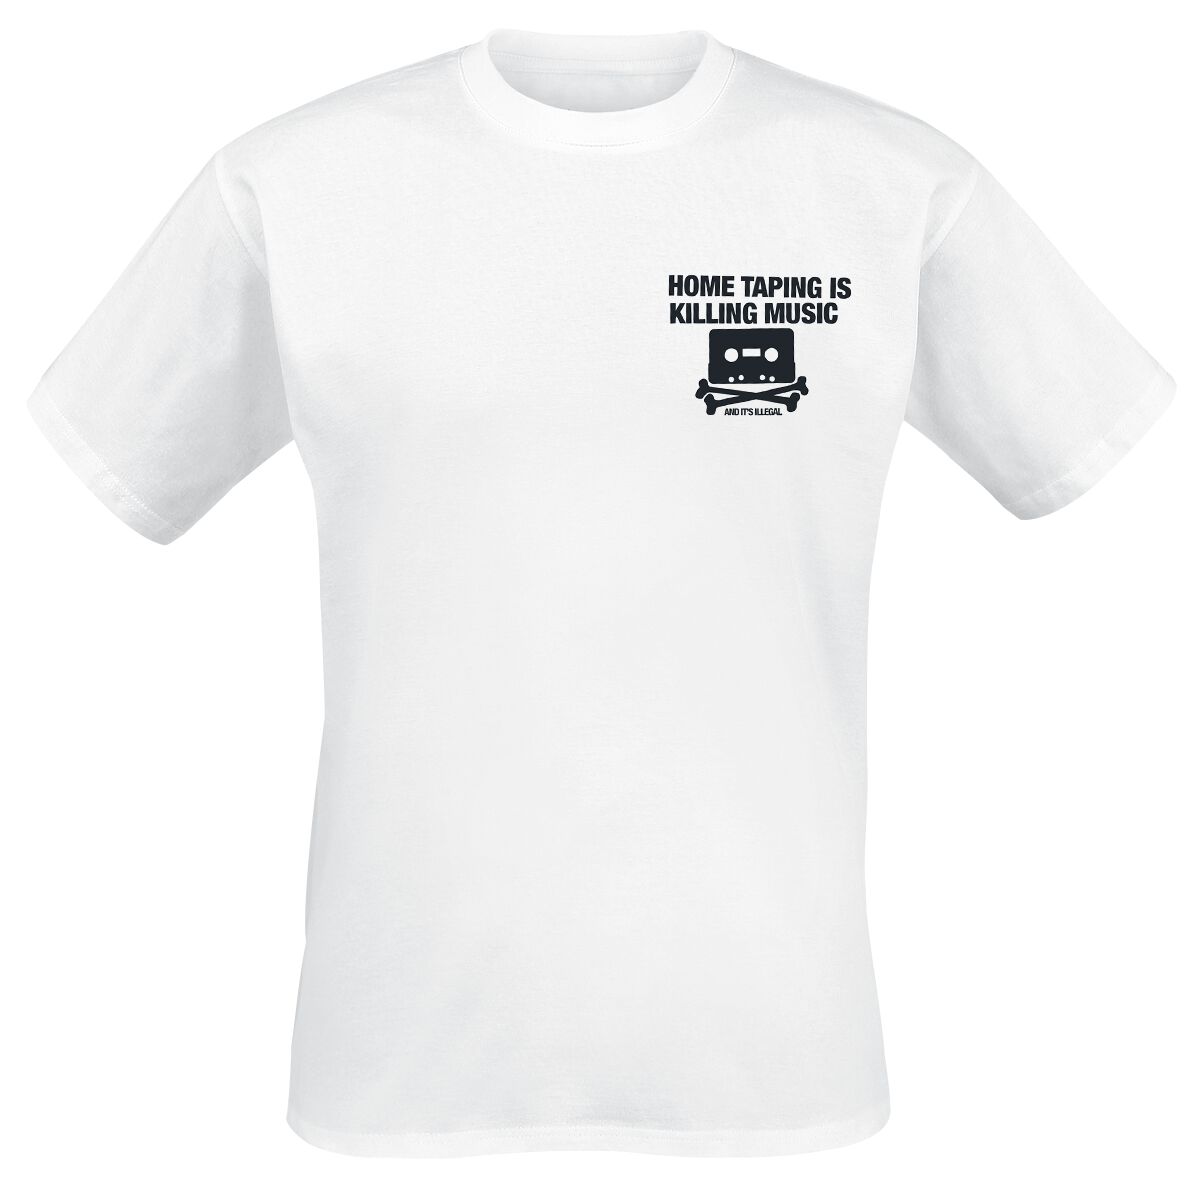 Parental Advisory T-Shirt - Home Taping - S bis XXL - für Männer - Größe L - weiß  - Lizenziertes Merchandise!